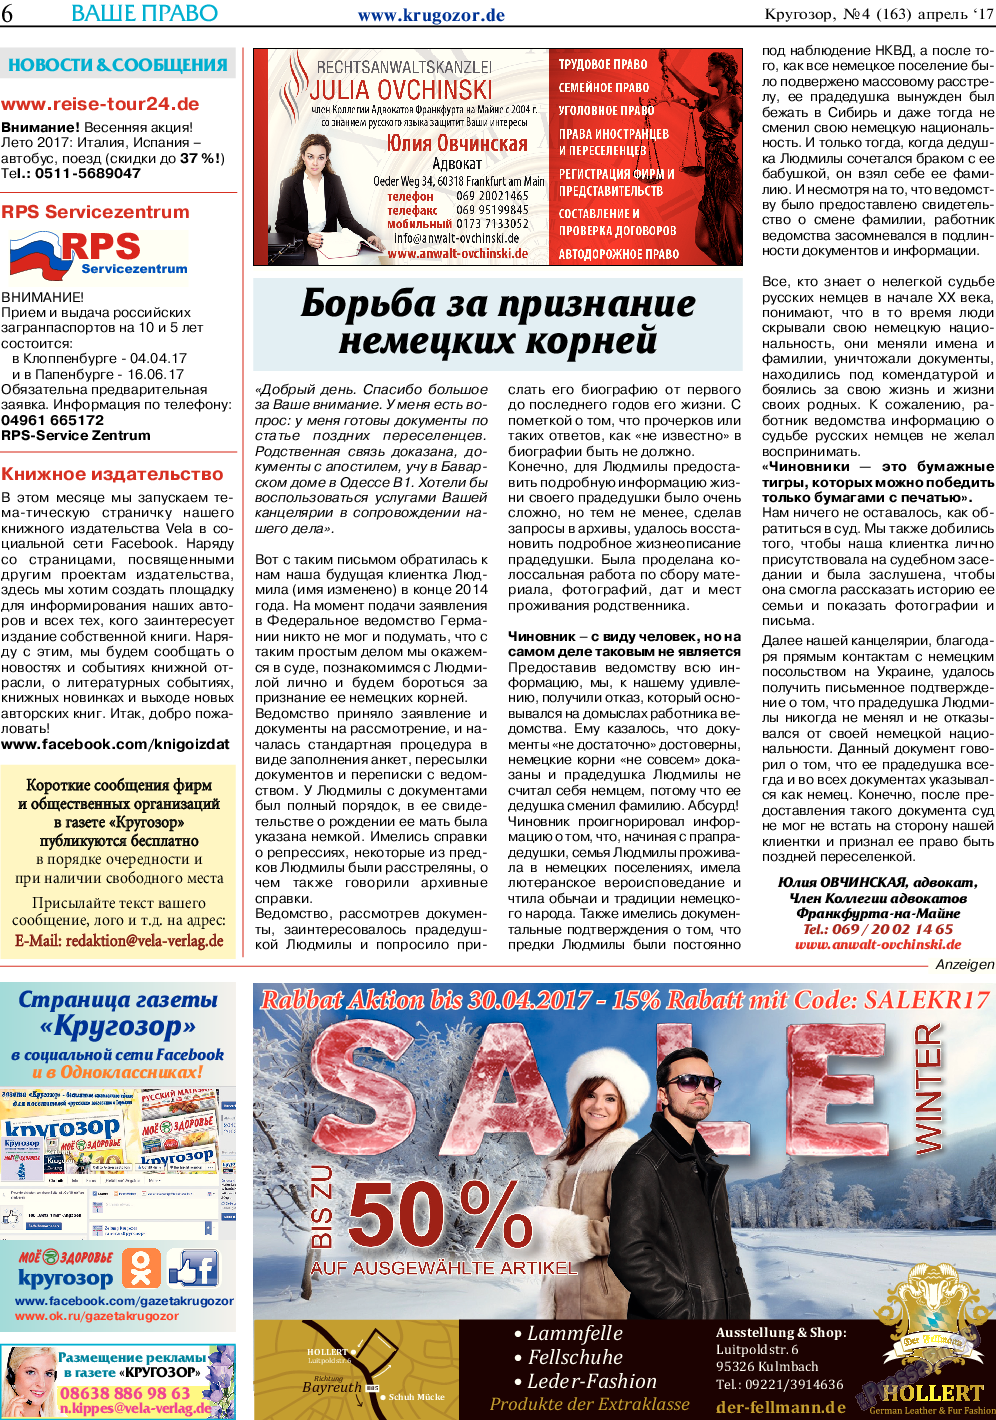 Кругозор, газета. 2017 №4 стр.6